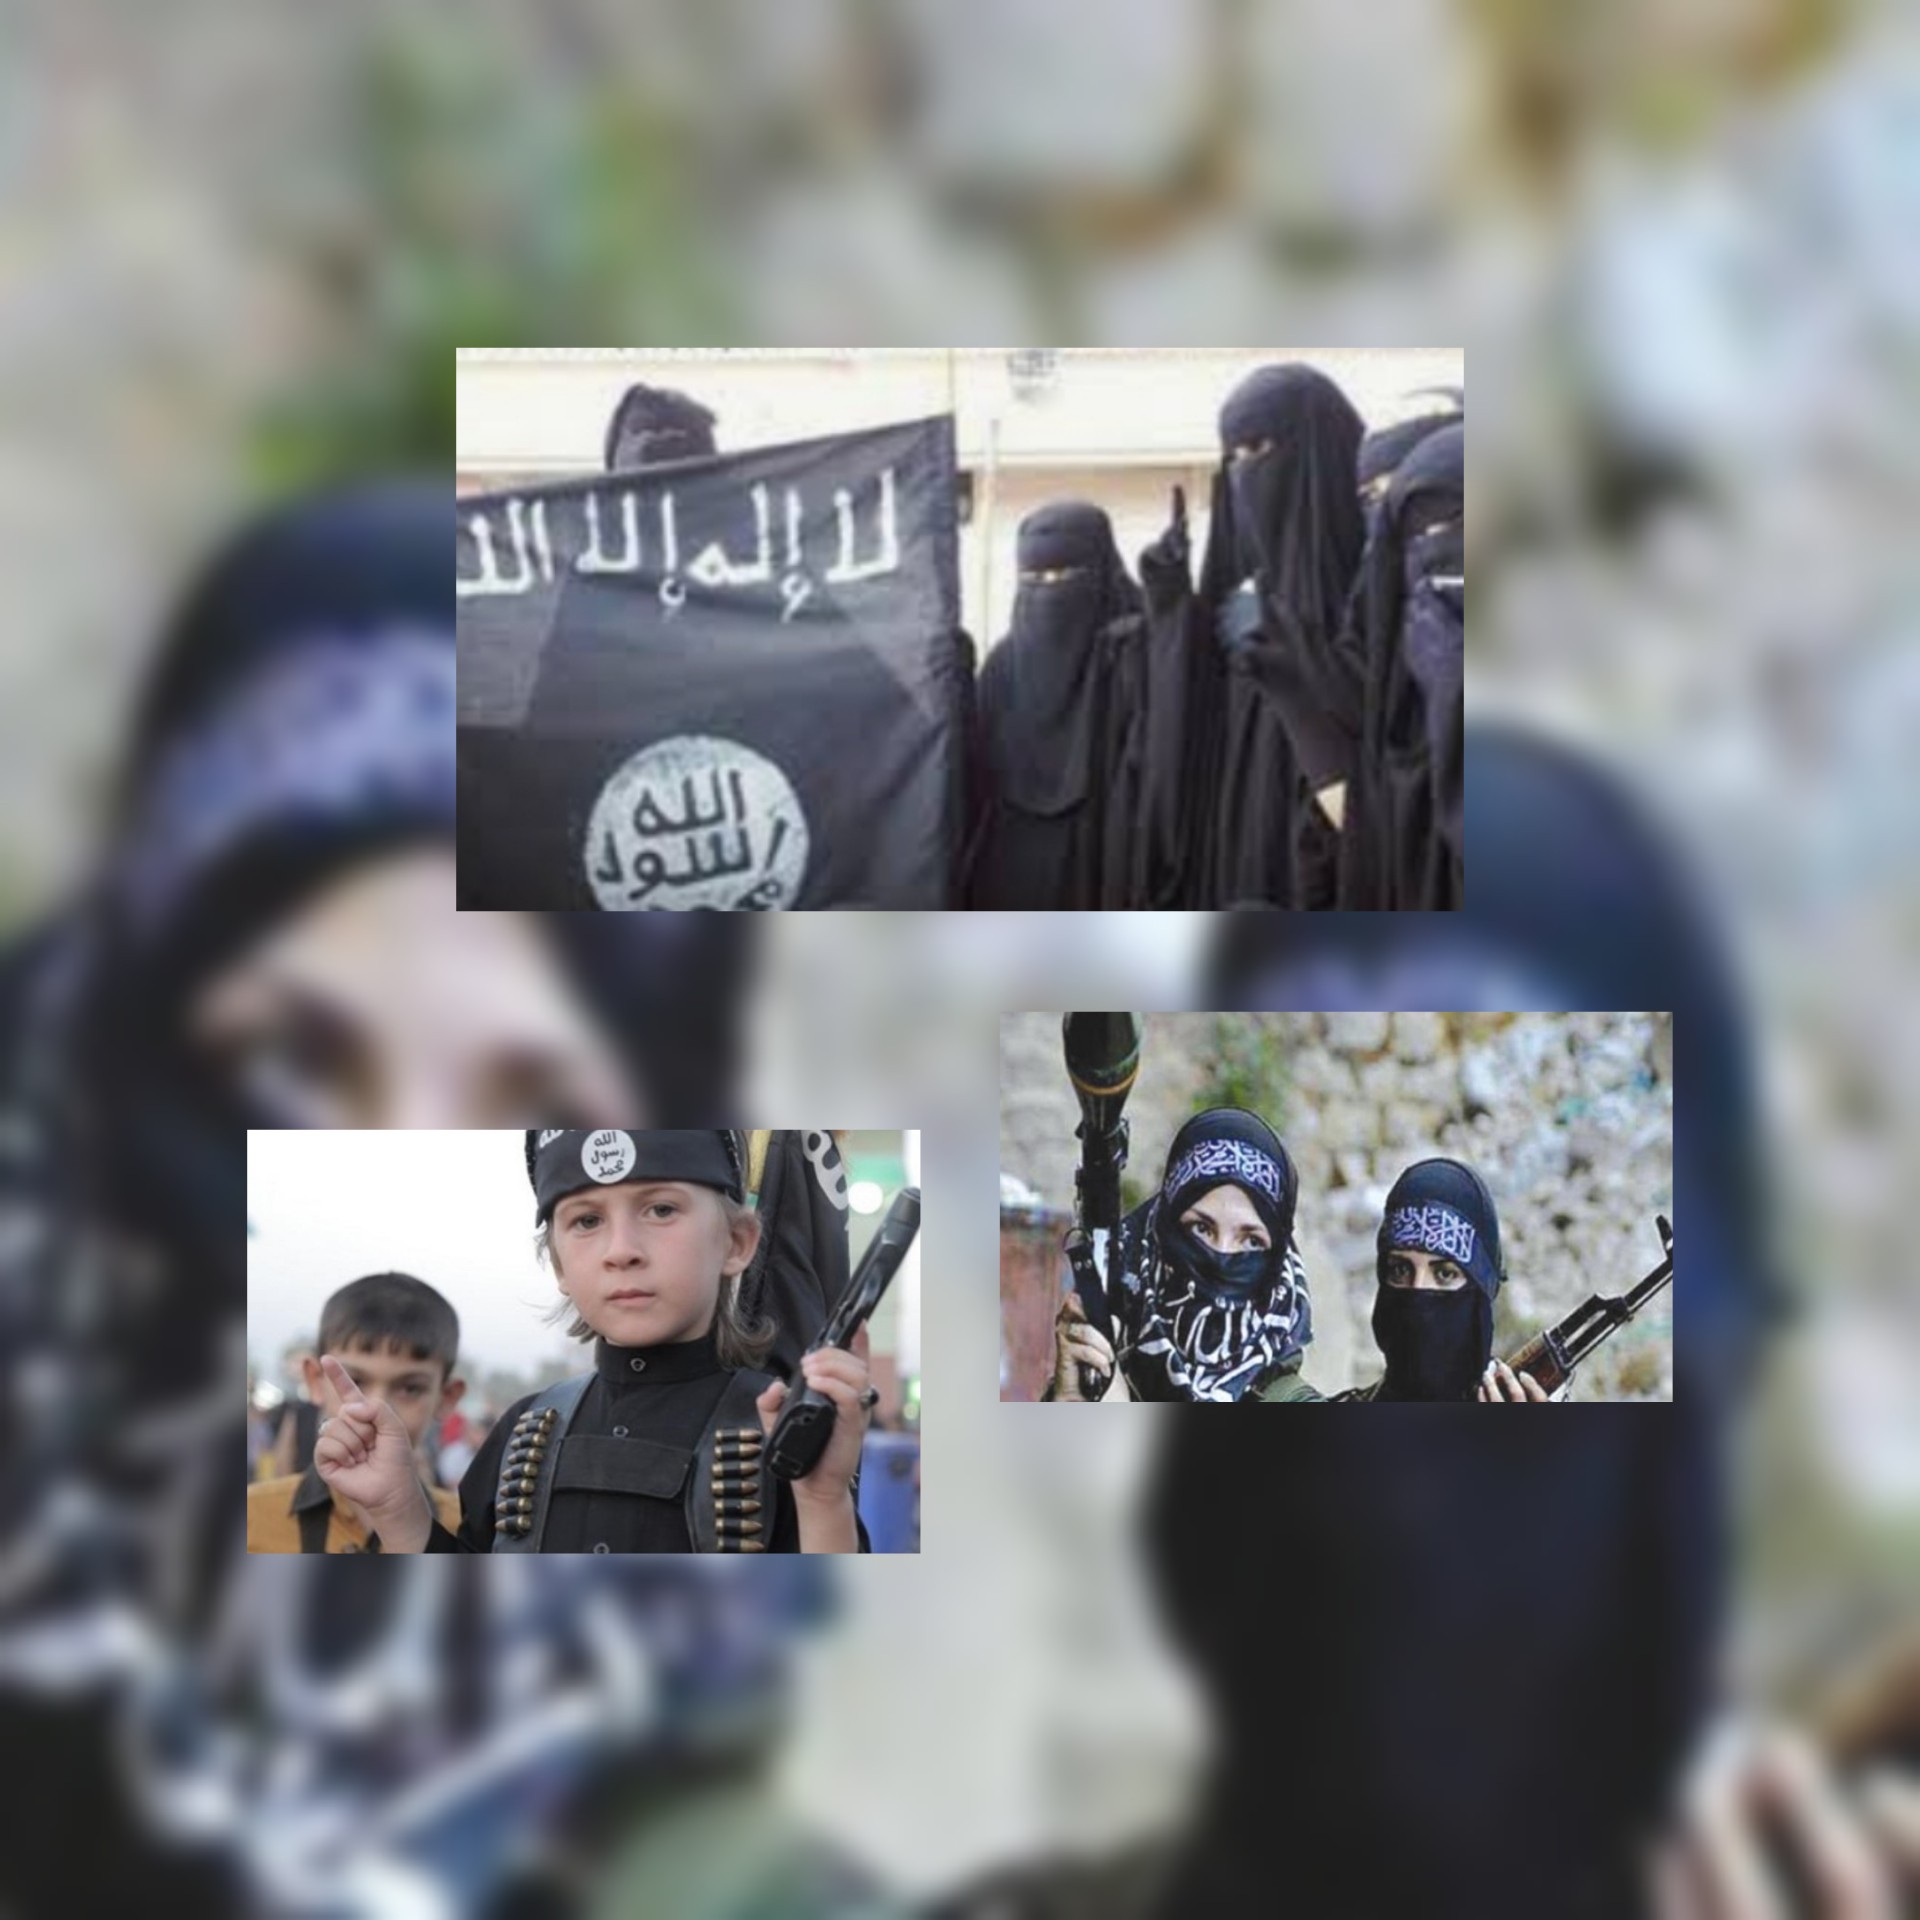 بعد هزيمة داعش في سوريا  تقرير ميدل إيست آي : هل يمكن لمحكمة أوروبية أن تجبر فرنسا على إعادة عائلات مقاتلي داعش الفرنسيين 